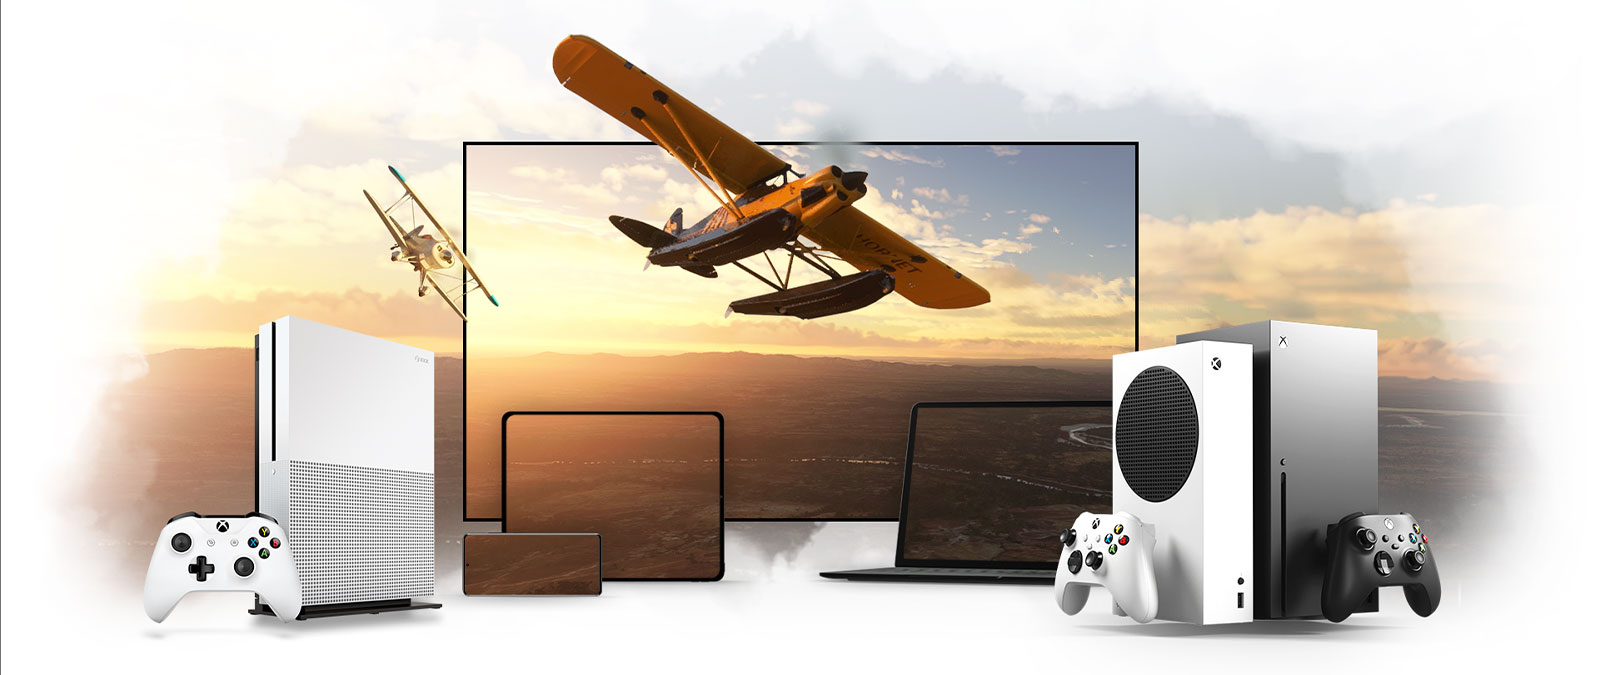 Eine Reihe von Geräten, einschließlich eines Fernsehers, einer Xbox One und einer Xbox Series X. Ein Propellerflugzeug fliegt vor einem sonnenerleuchteten Horizont.